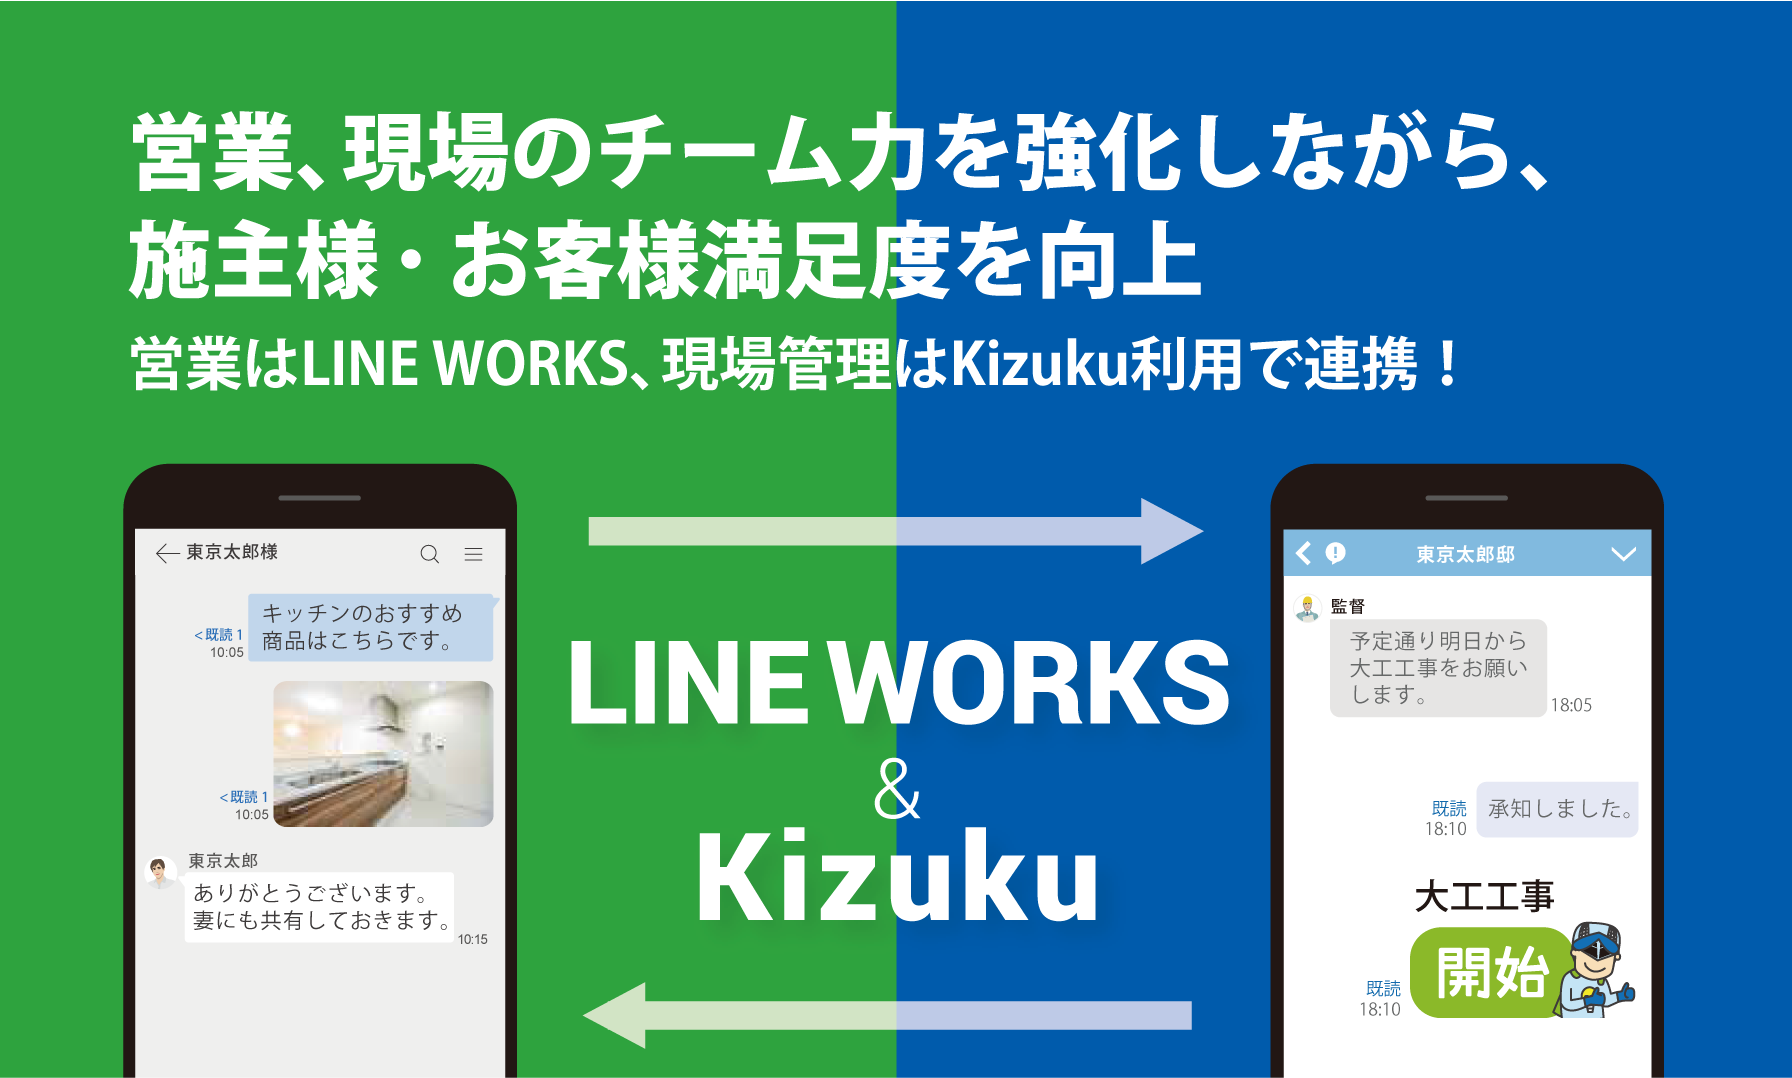 LINE WORKS＆Kizukuオンラインセミナー